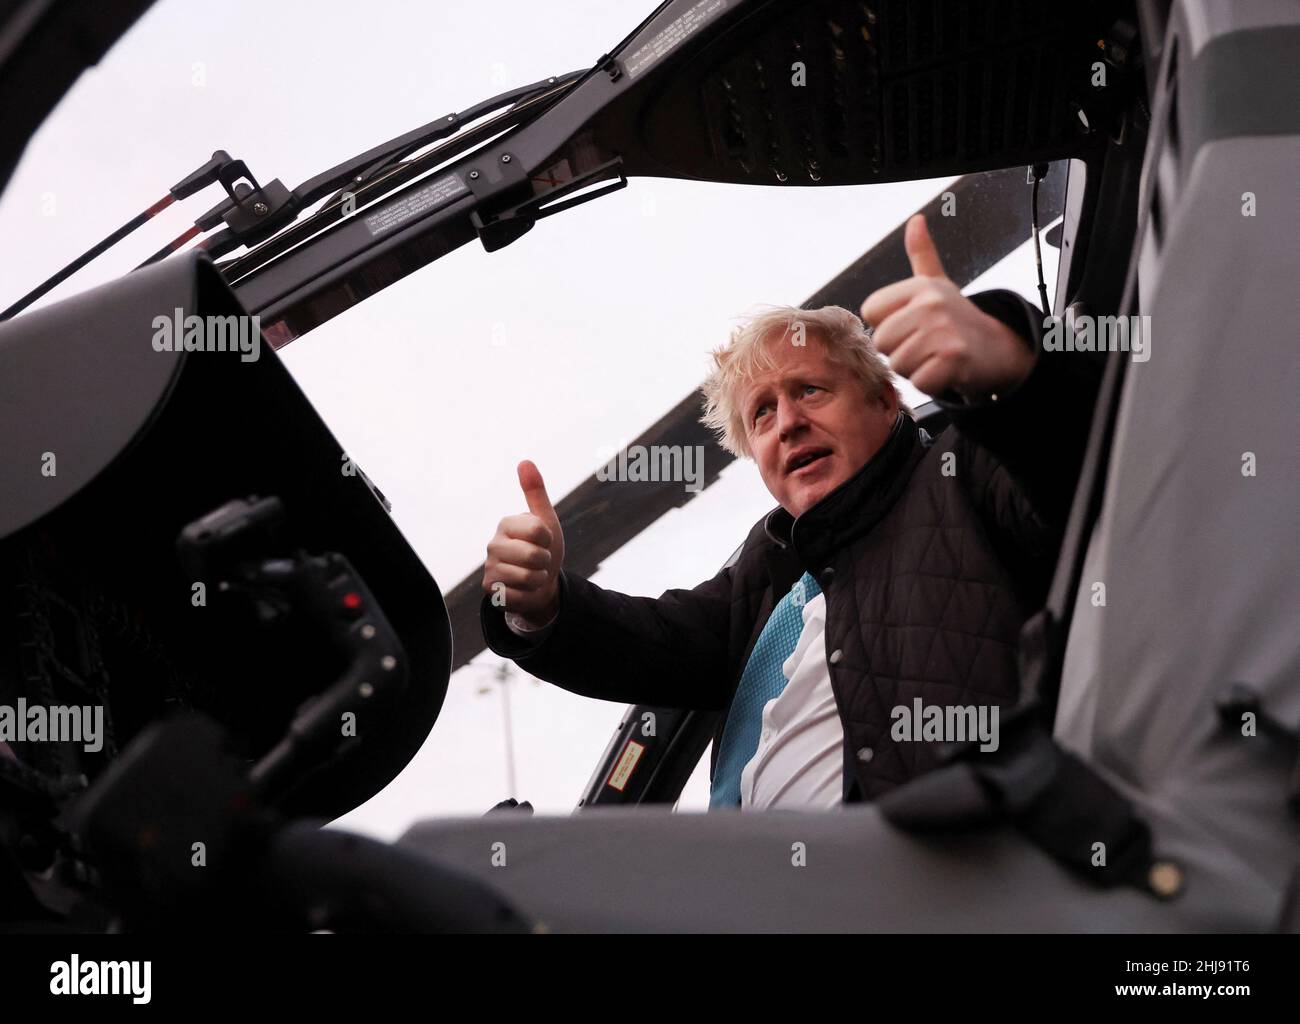 Il primo ministro Boris Johnson durante una visita alla RAF Valley di Anglesey, Galles del Nord. Il primo Ministro è destinato ad affrontare ulteriori interrogativi su un'indagine di polizia sulla partygate, in quanto il n. 10 è un punto di forza per la presentazione della relazione di sue Gray sulle possibili violazioni di blocco. Data foto: Giovedì 27 gennaio 2022. Foto Stock